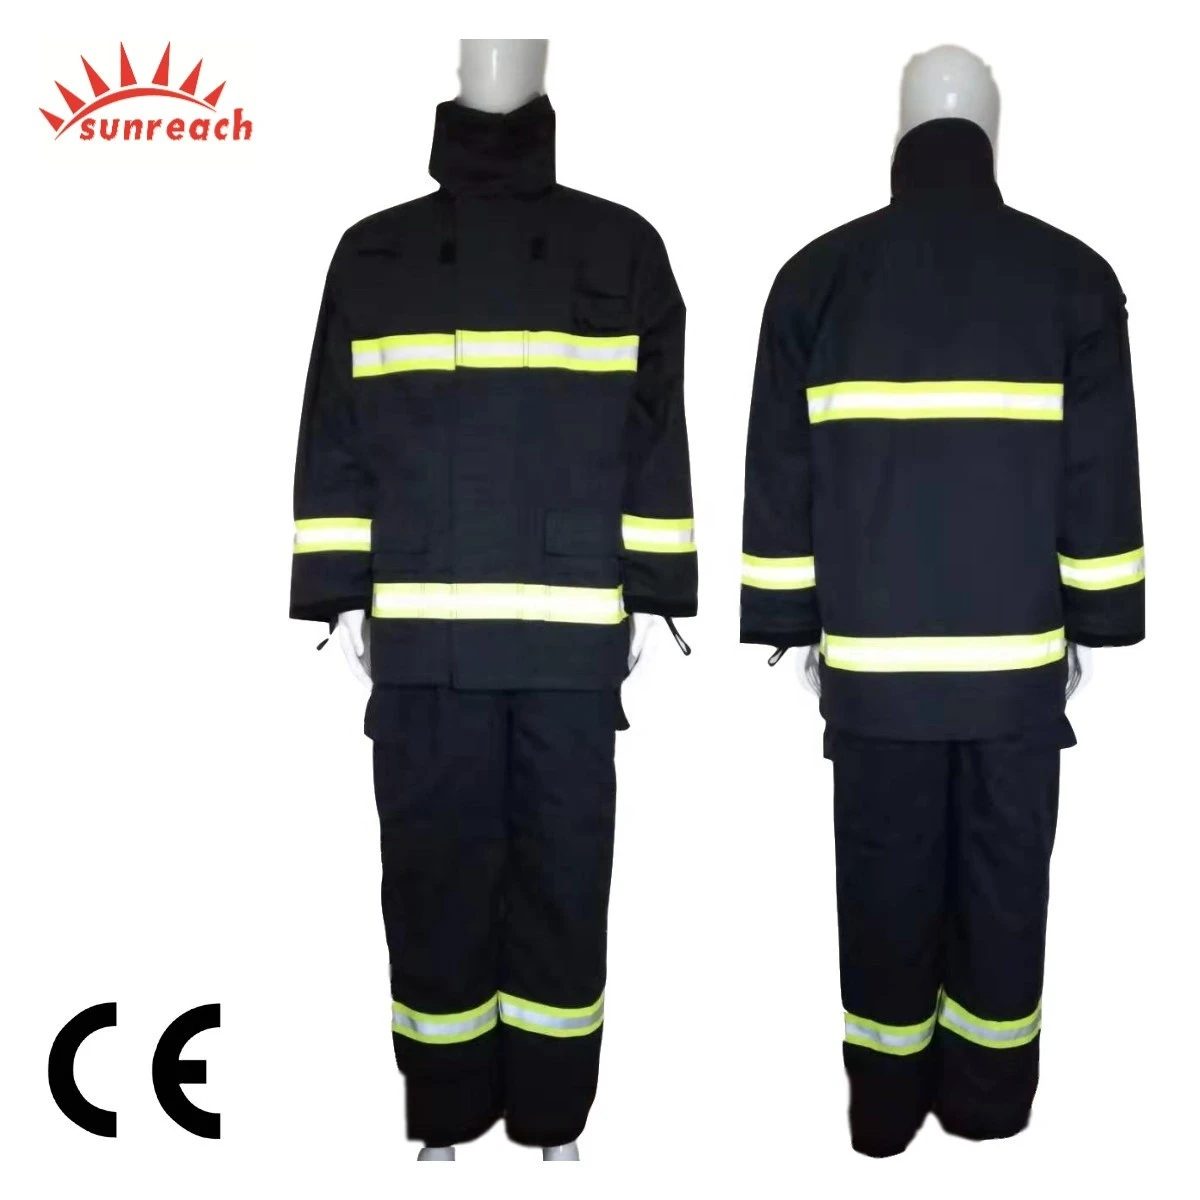 EN469 Fire Retardant Nomex Fire Suit Fabric For Firefighting Bunker Gear